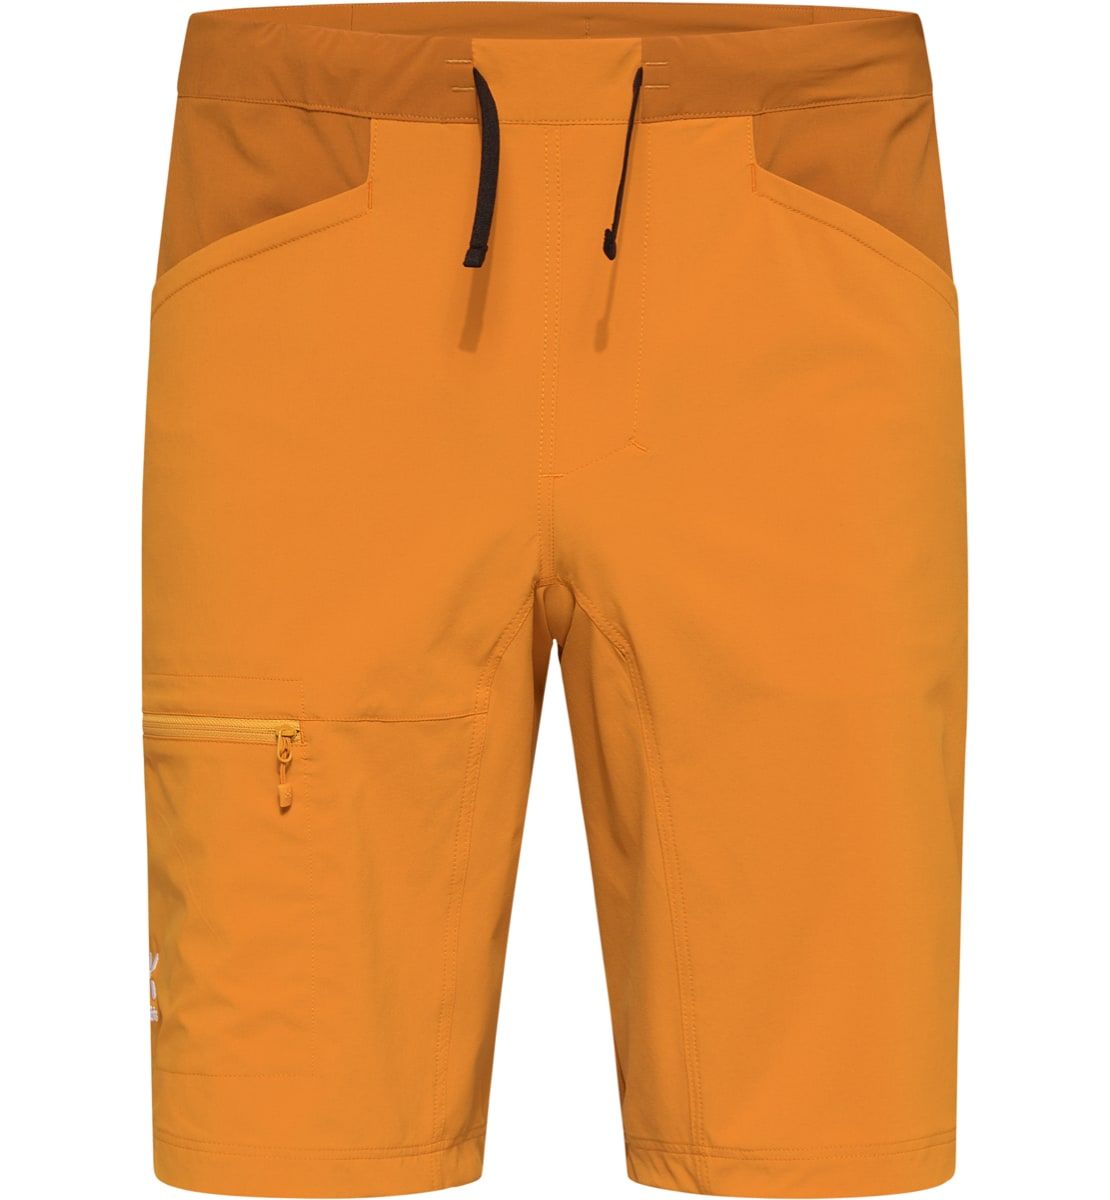 Haglöfs Roc Lite Standard Shorts Men Desert yellow/Golden brown